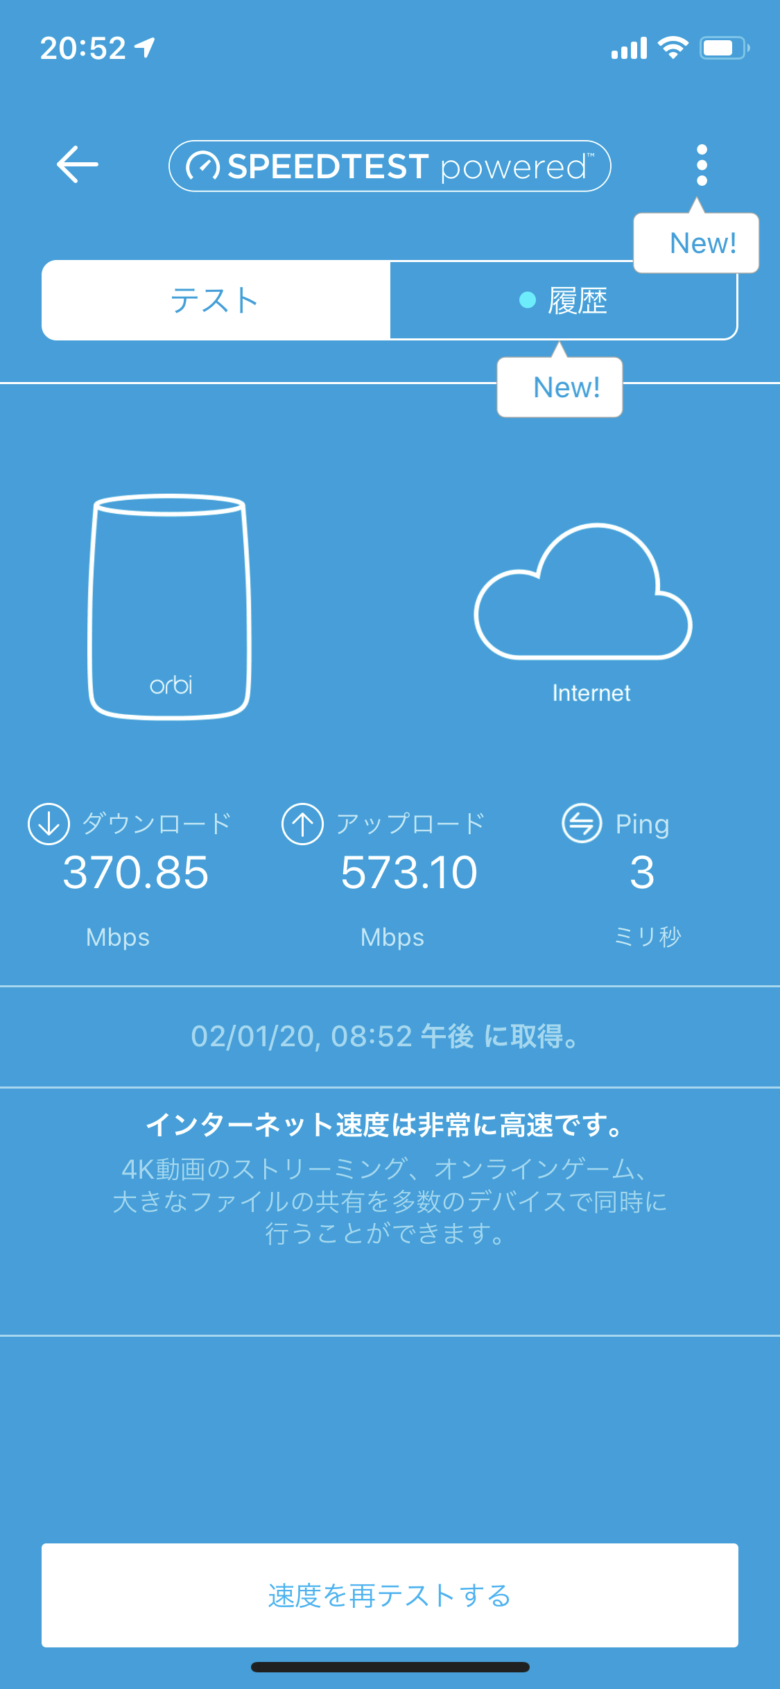 Orbi WiFi6の専用スマホアプリのインターネット回線速度